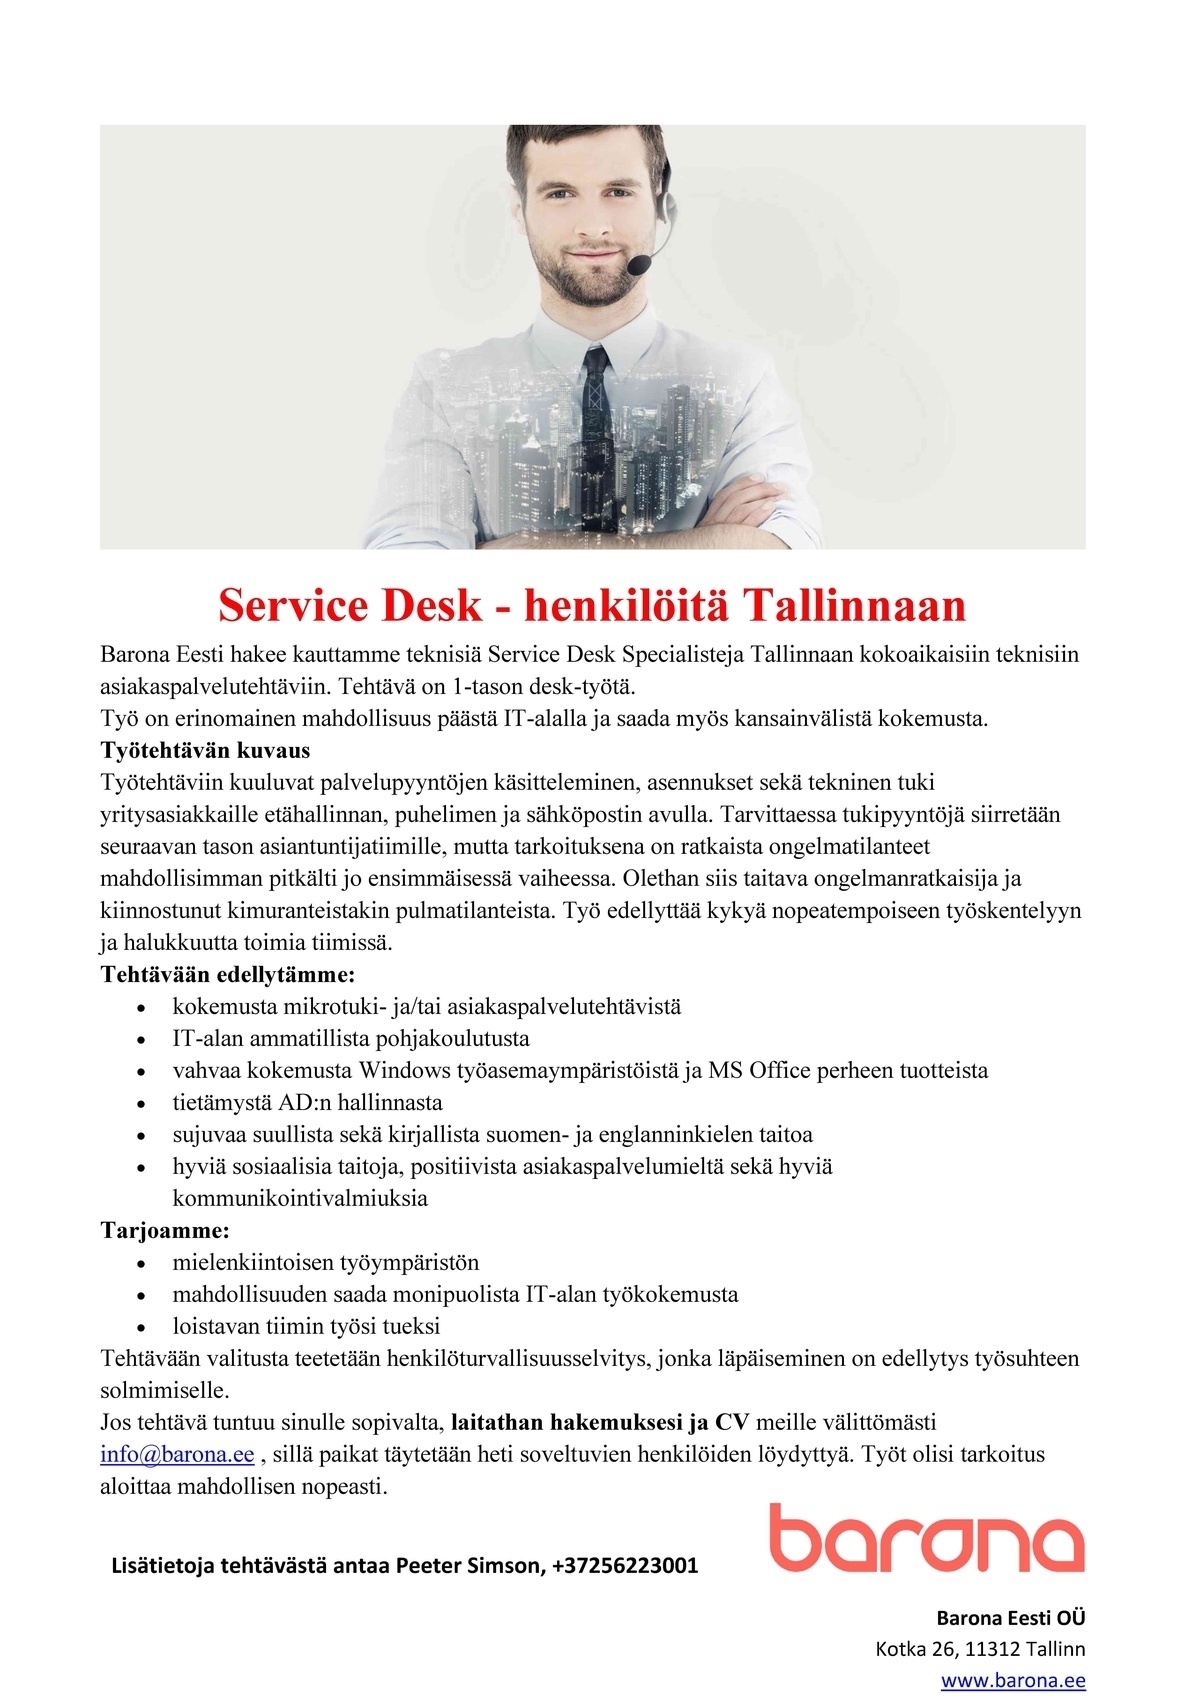 Barona Eesti OÜ Service Desk - henkilöitä Tallinnaan